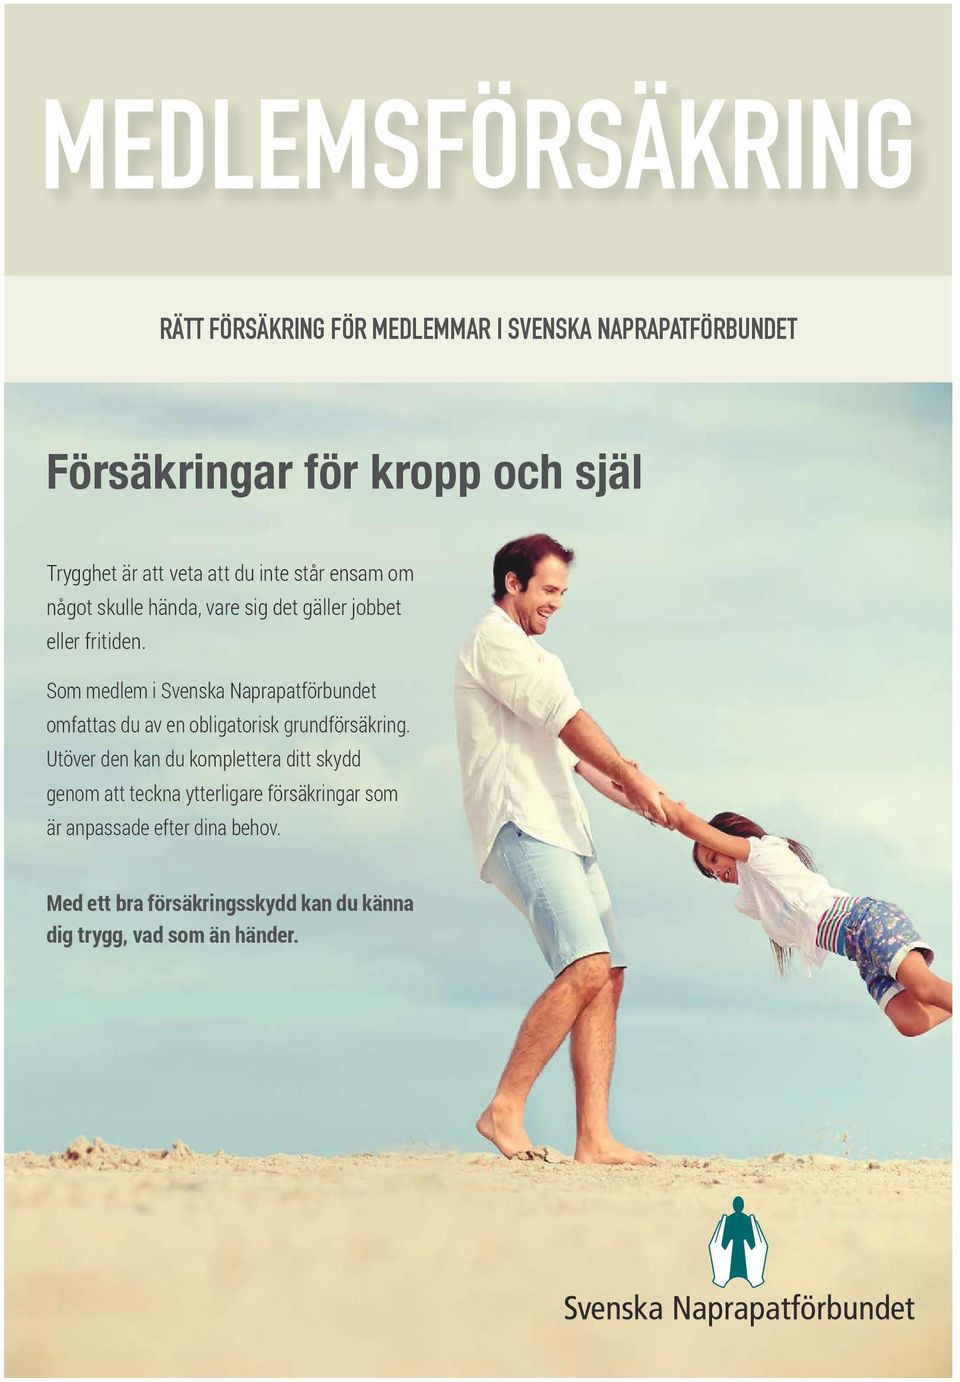 Som medlem i Svenska Naprapatförbundet omfattas du av en obligatorisk grundförsäkring.